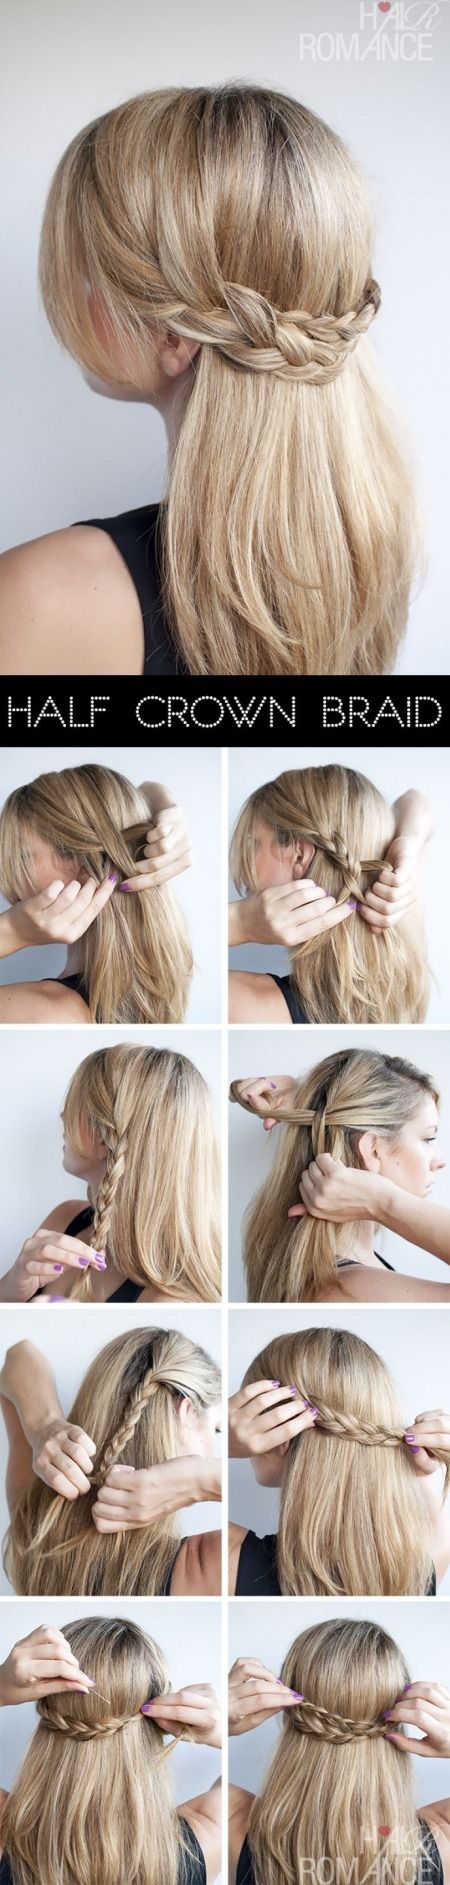 Half crown braid